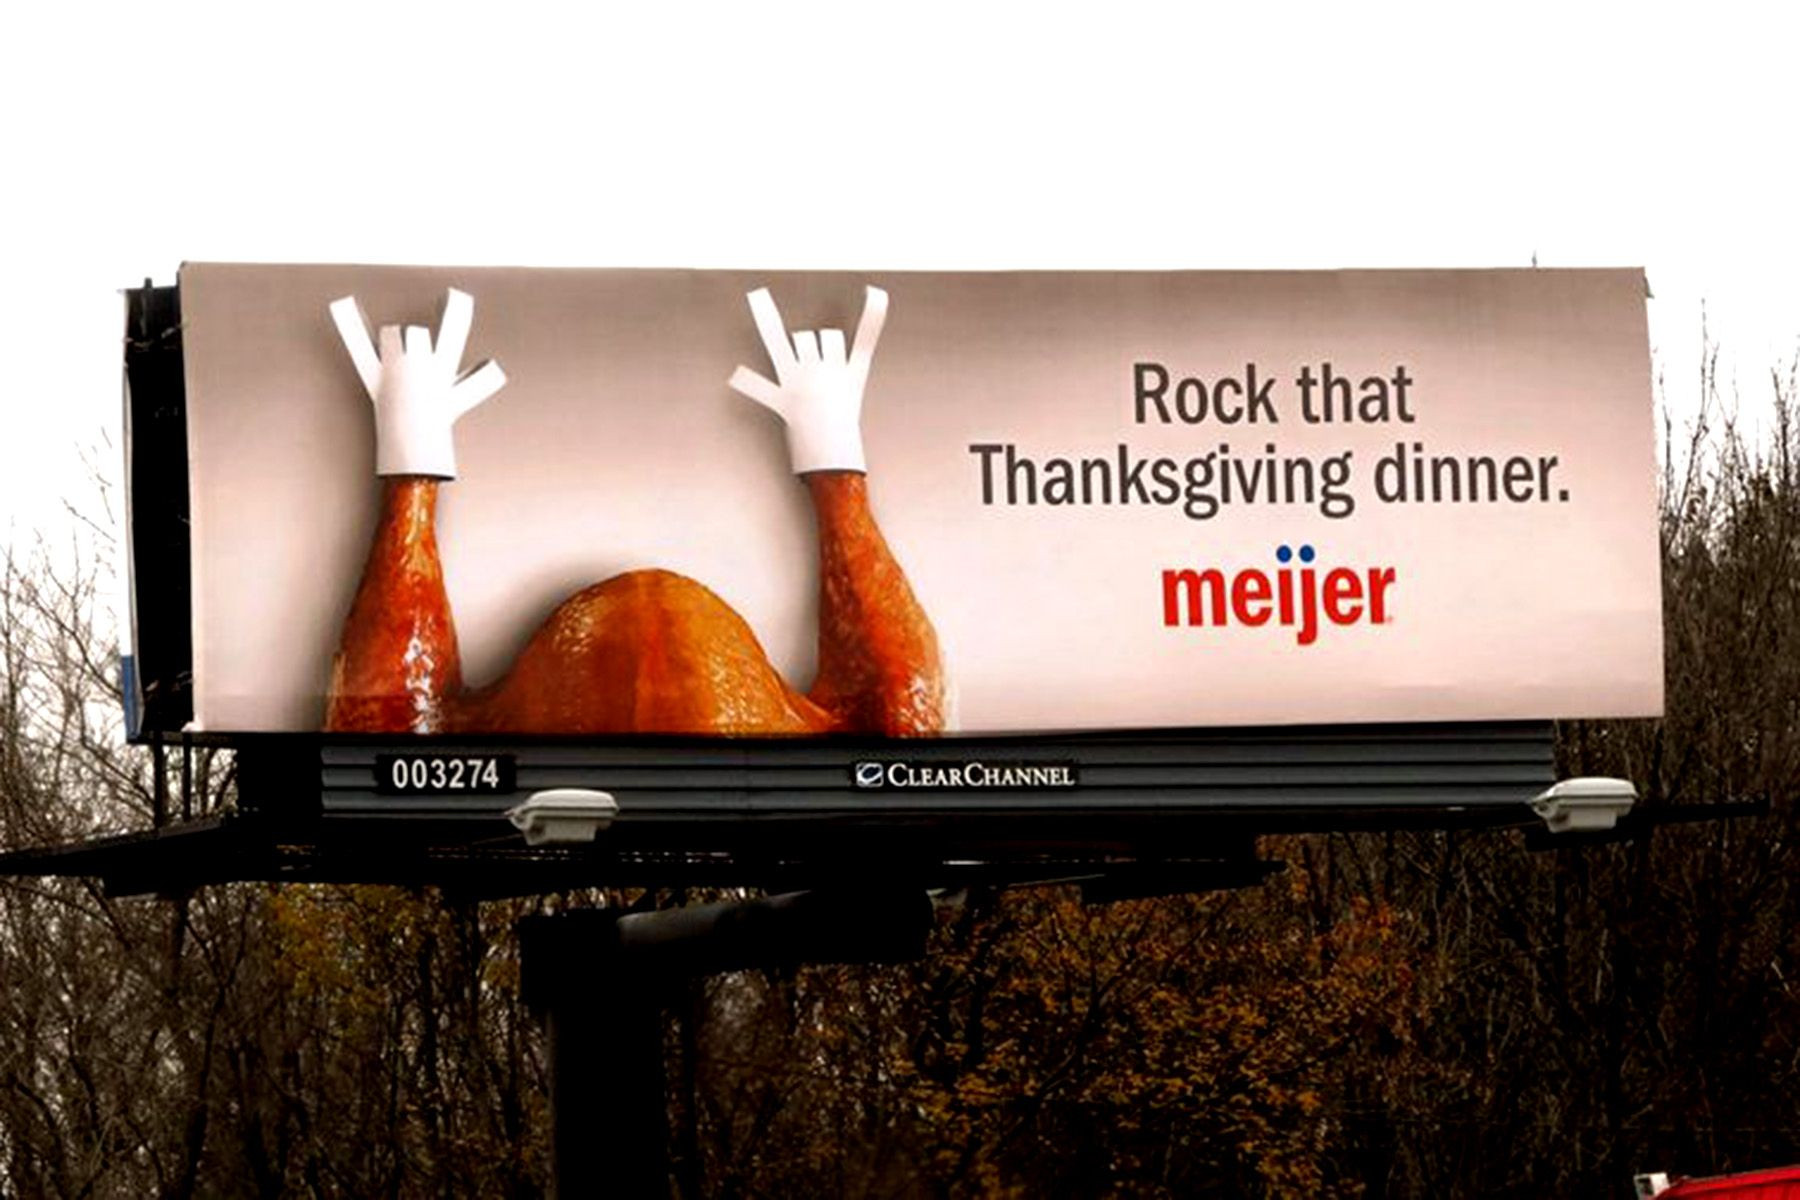 Meijer Thanksgiving Dinner
 Meijer billboard "Rock that Thanksgiving dinner